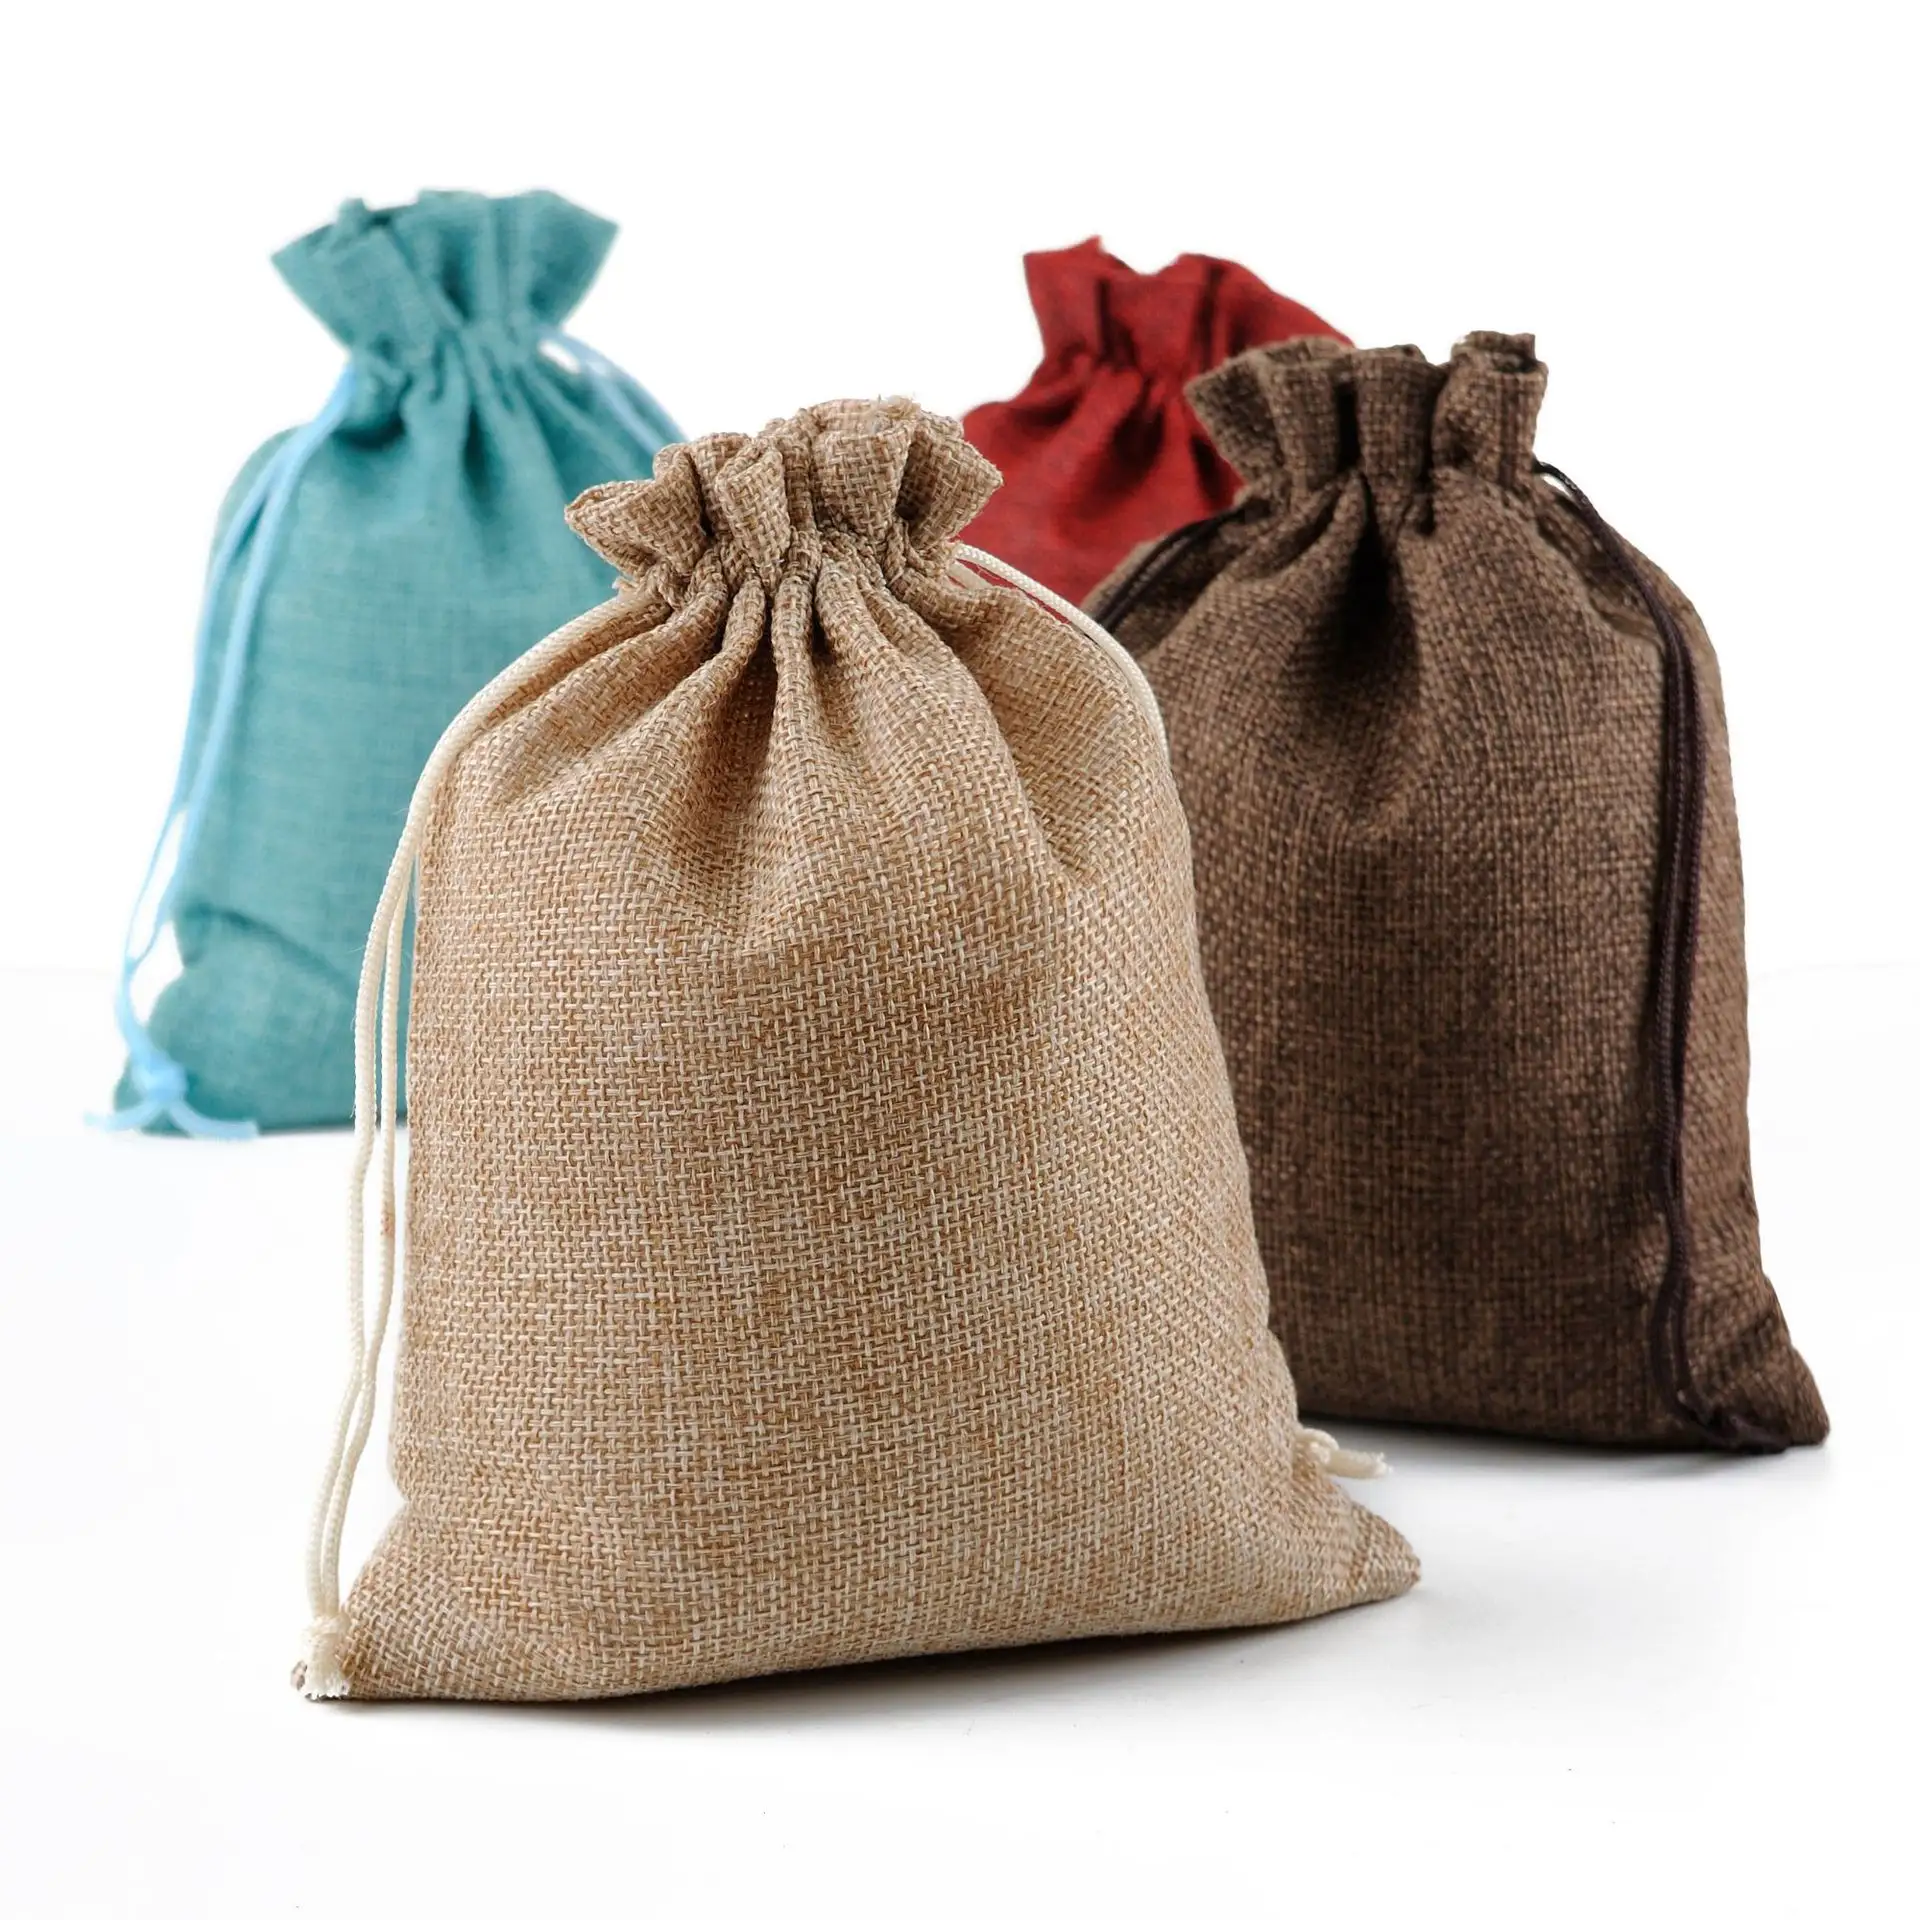 Sacchetti di tela di iuta sacco con coulisse in iuta sacchetti regalo per bomboniere decorazioni per feste a casa artigianato borse di tela naturale